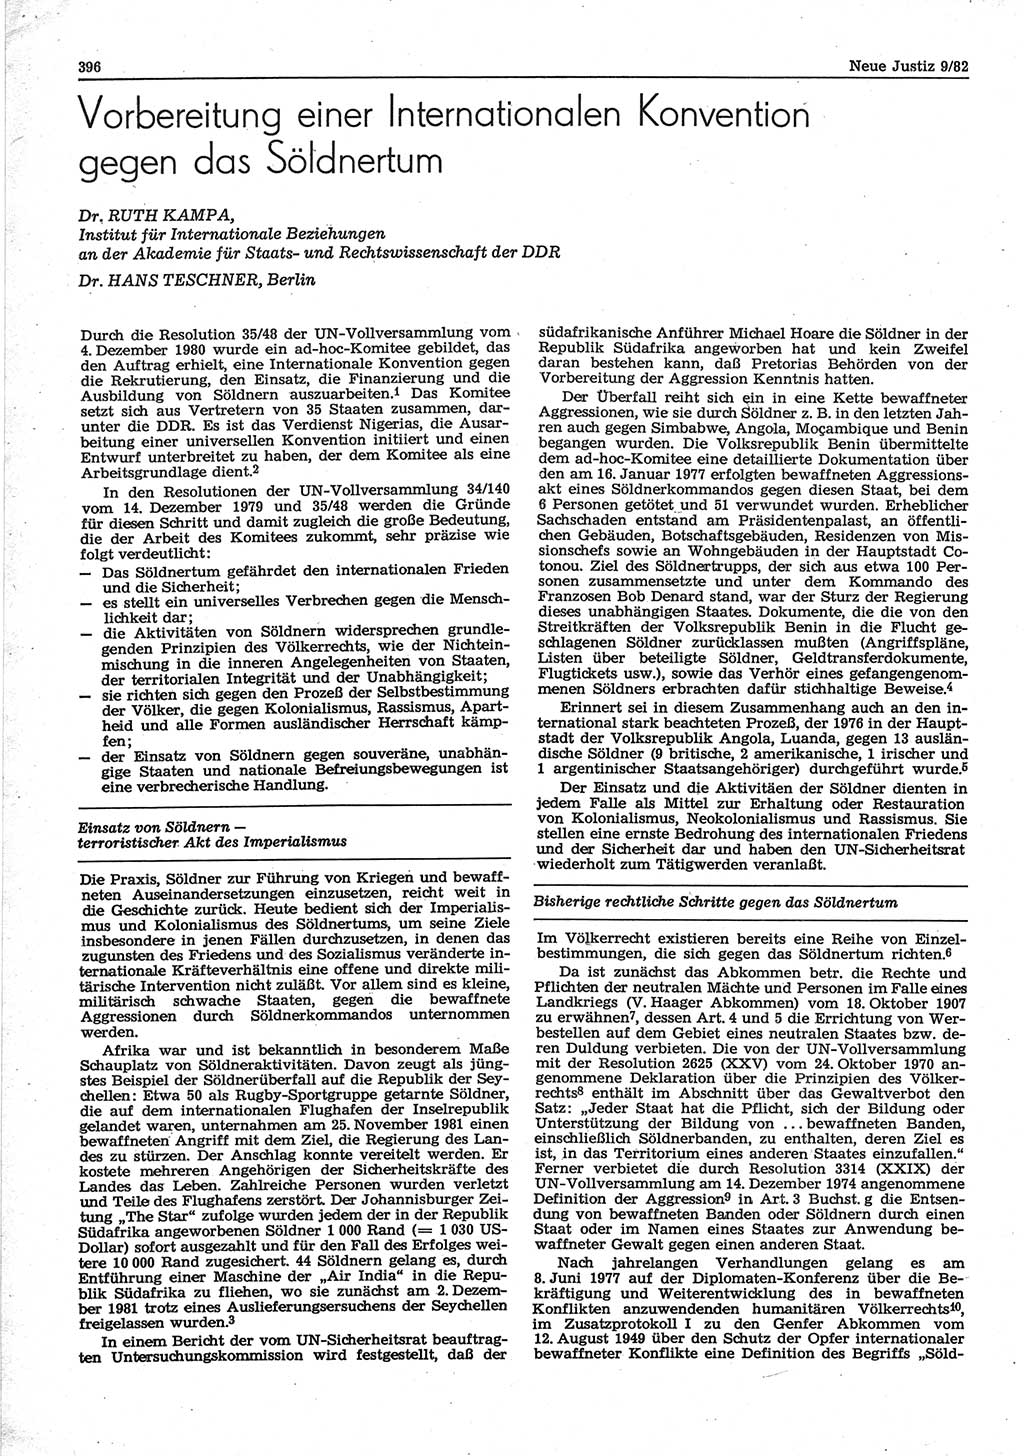 Neue Justiz (NJ), Zeitschrift für sozialistisches Recht und Gesetzlichkeit [Deutsche Demokratische Republik (DDR)], 36. Jahrgang 1982, Seite 396 (NJ DDR 1982, S. 396)